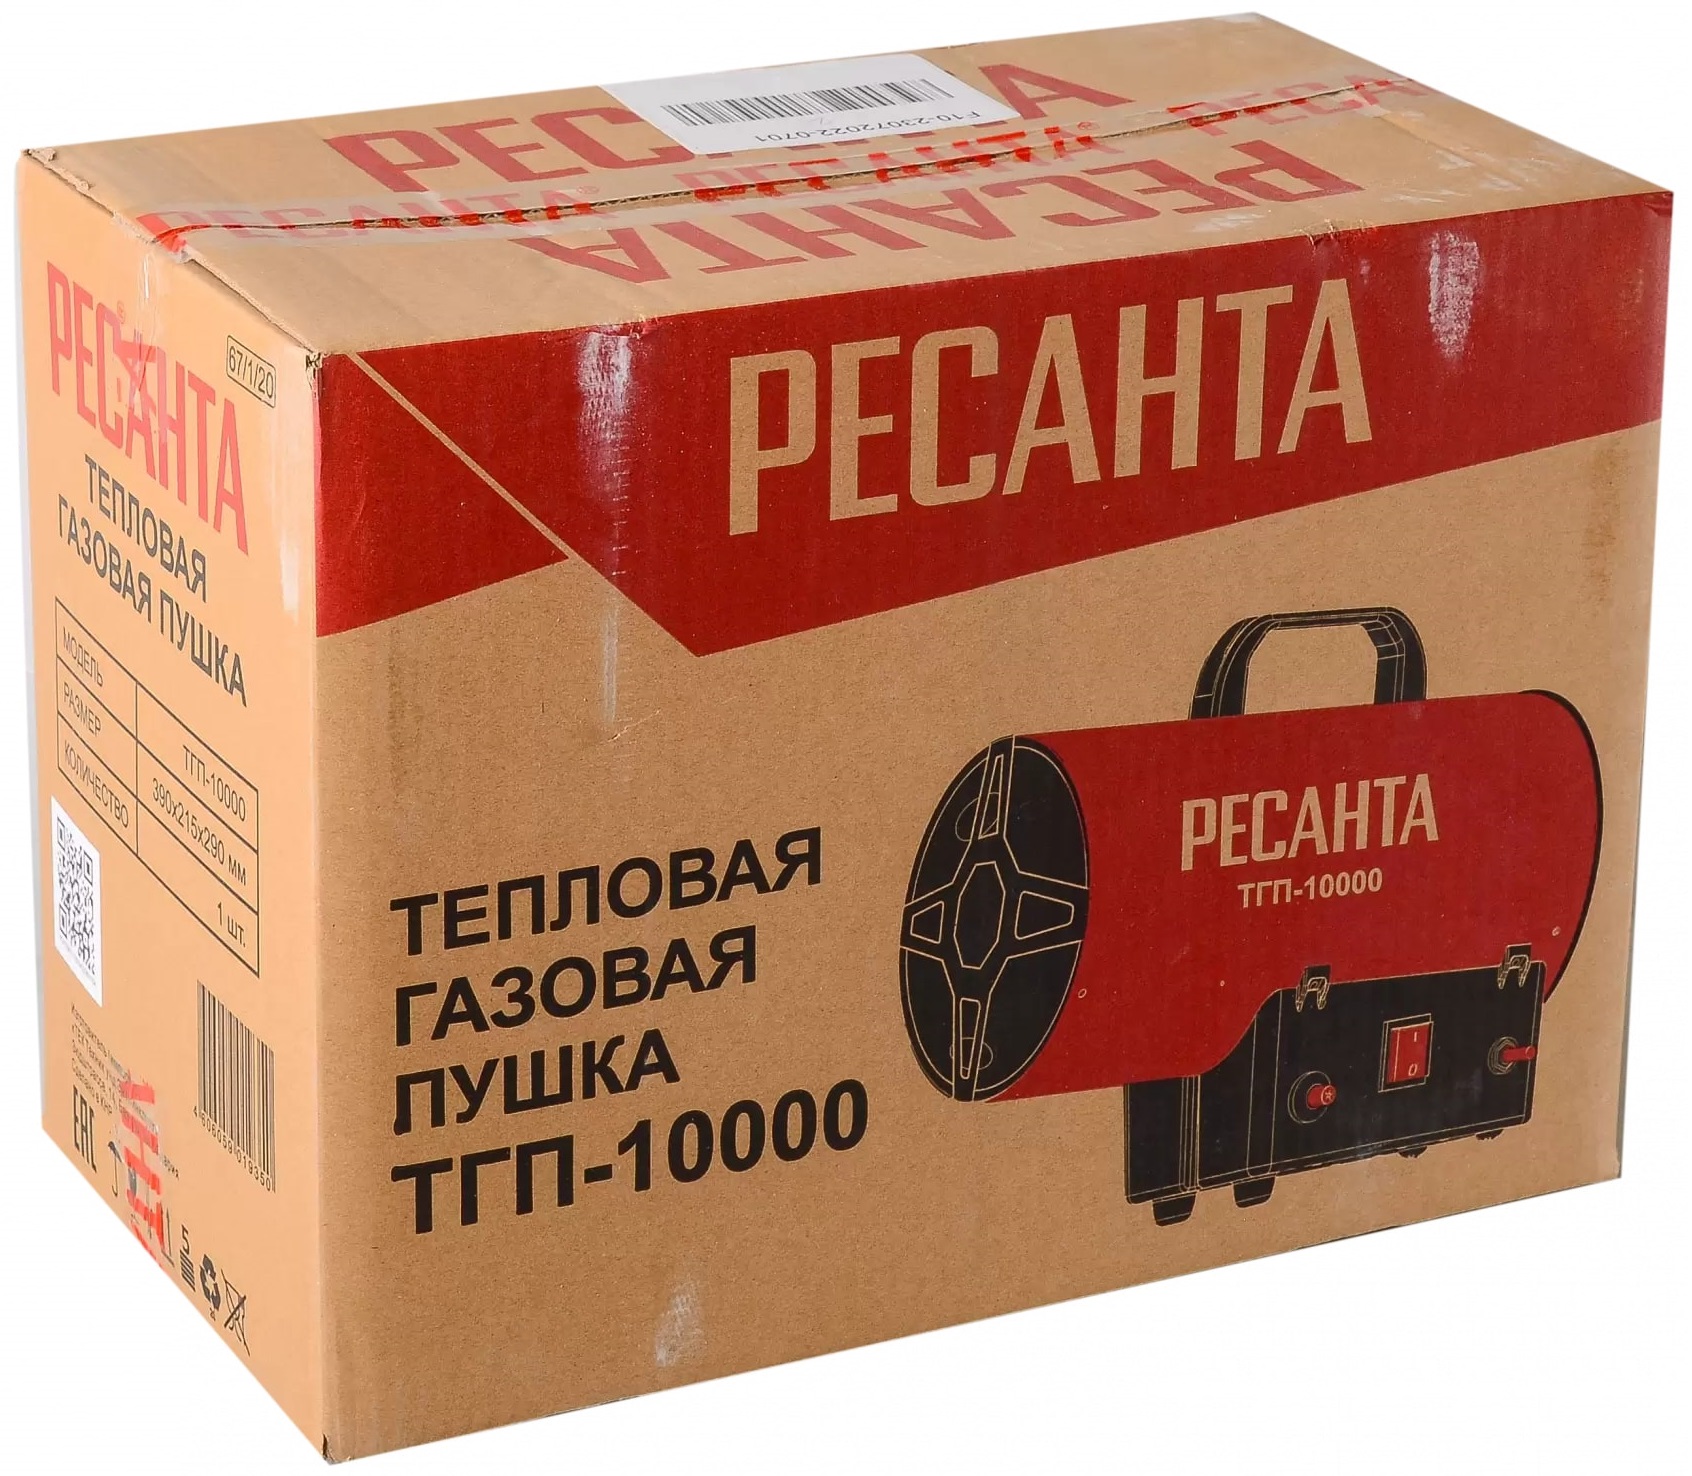 Коробка Ресанта ТГП-10000